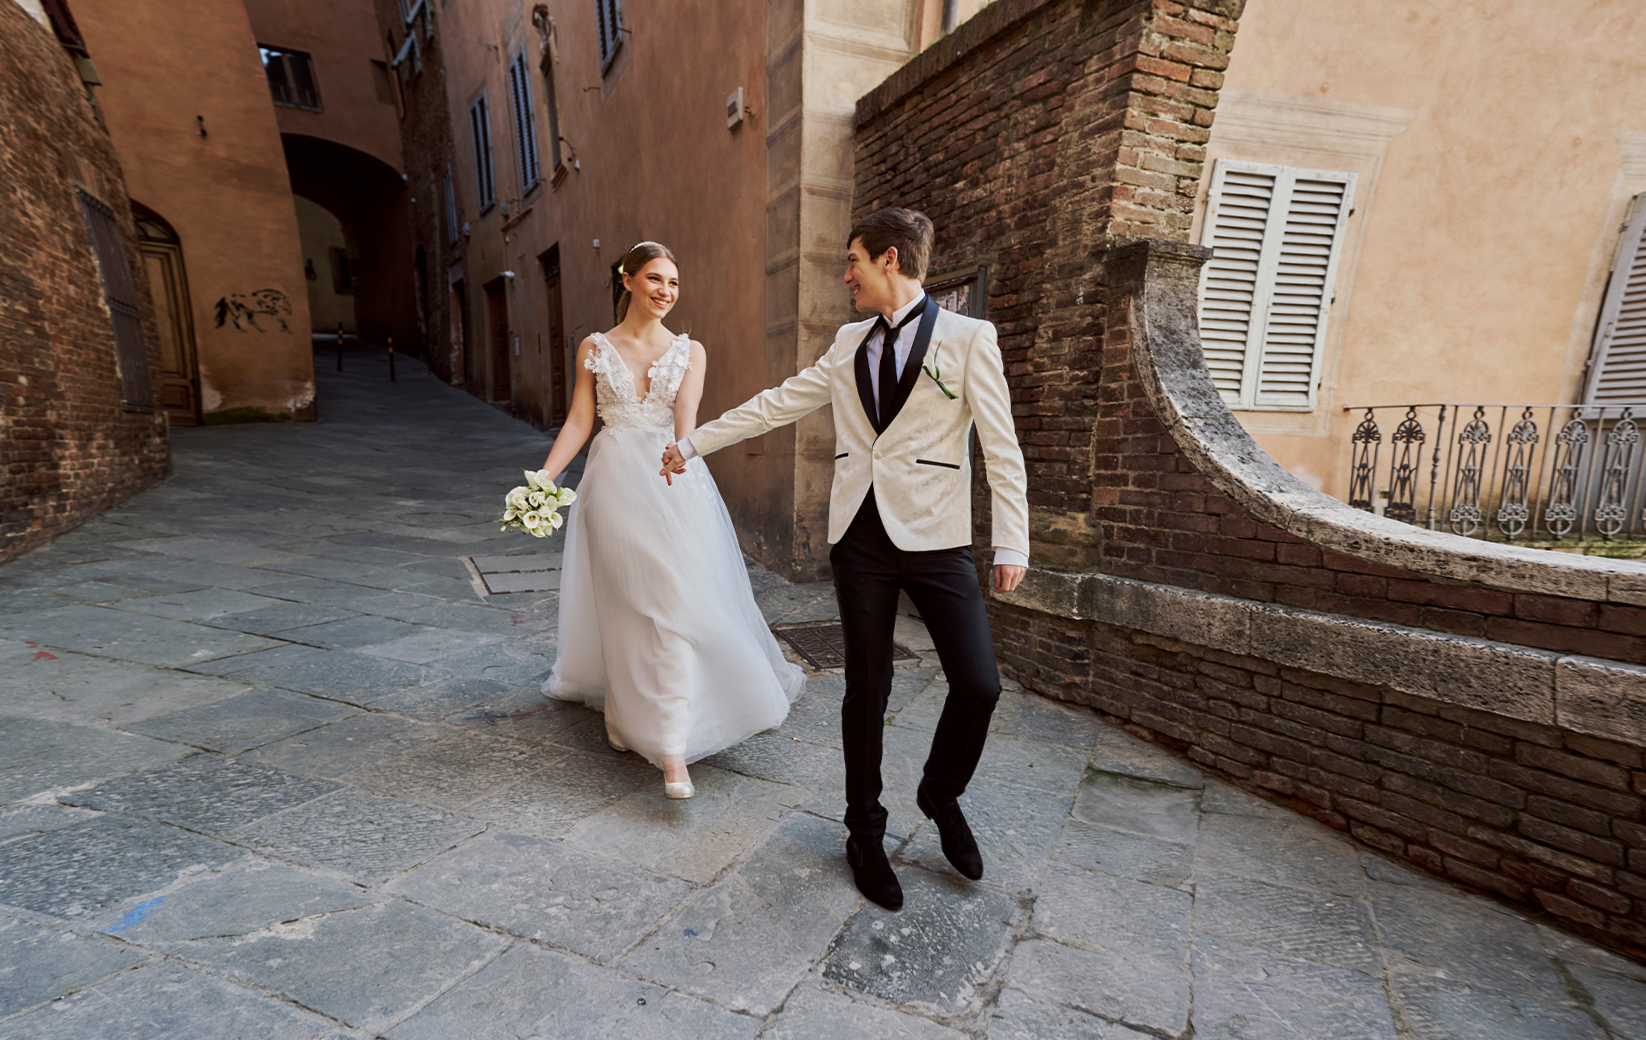 Italy for Weddings - L'agenzia di Viaggi - 09 settembre, 2019 - Destination Italy Wedding - Italy for Weddings